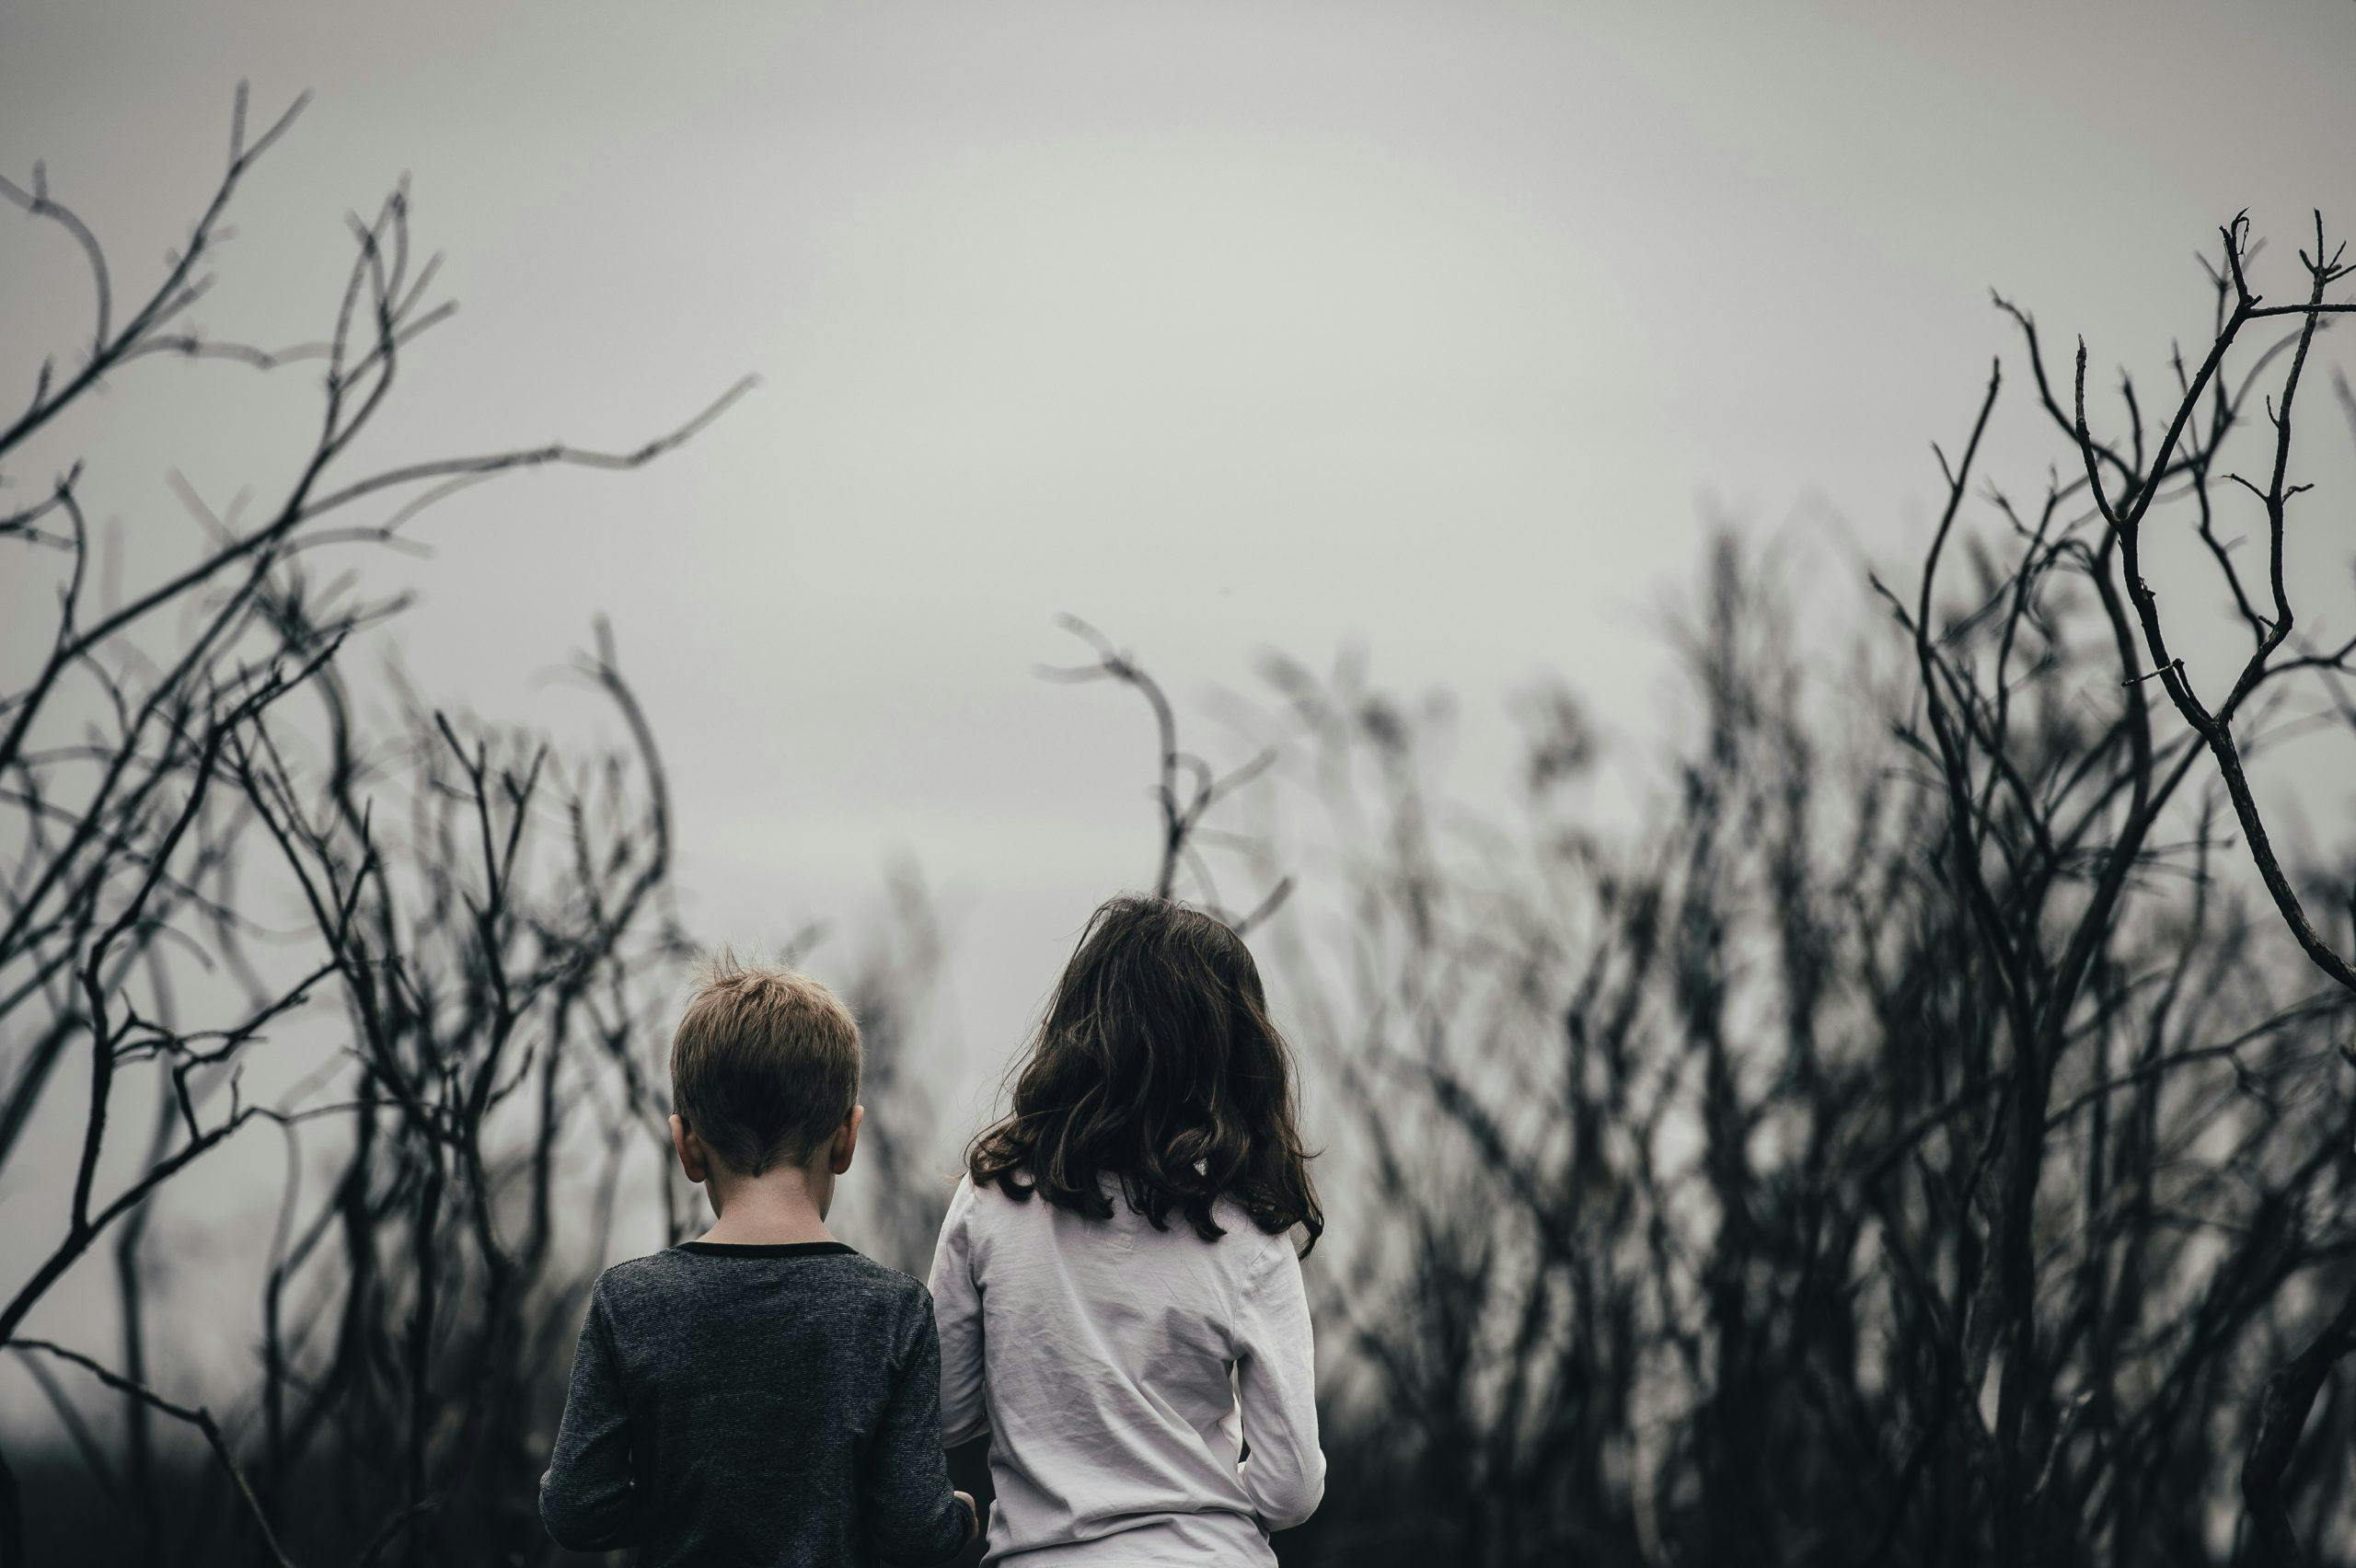 Two children in a dark forest